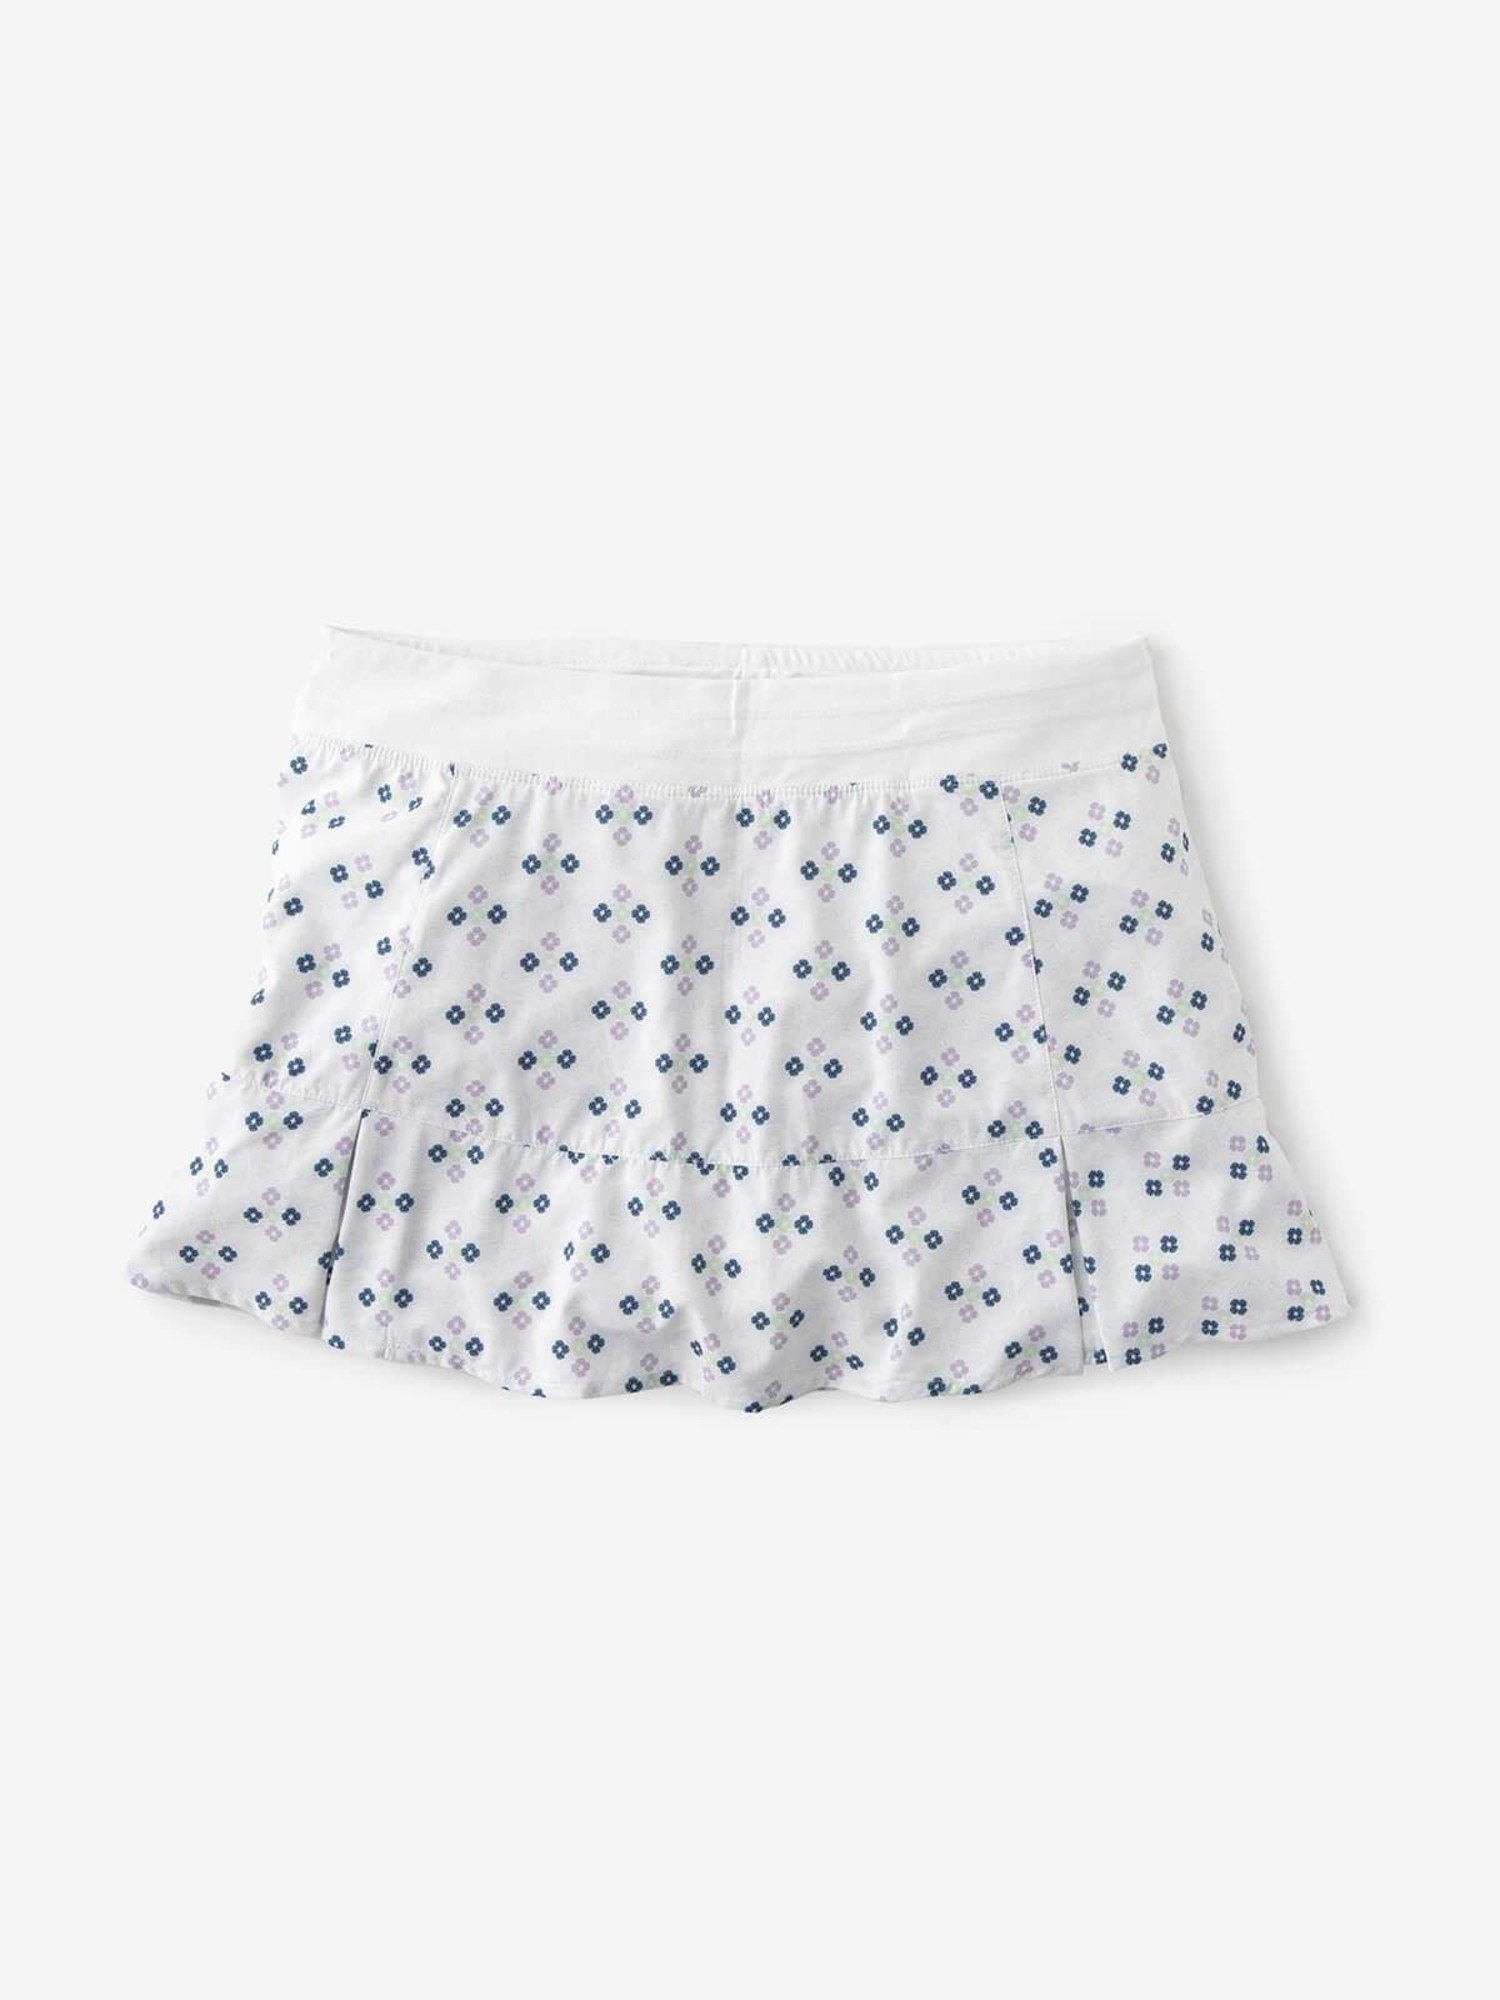 white tennis skirt for sale